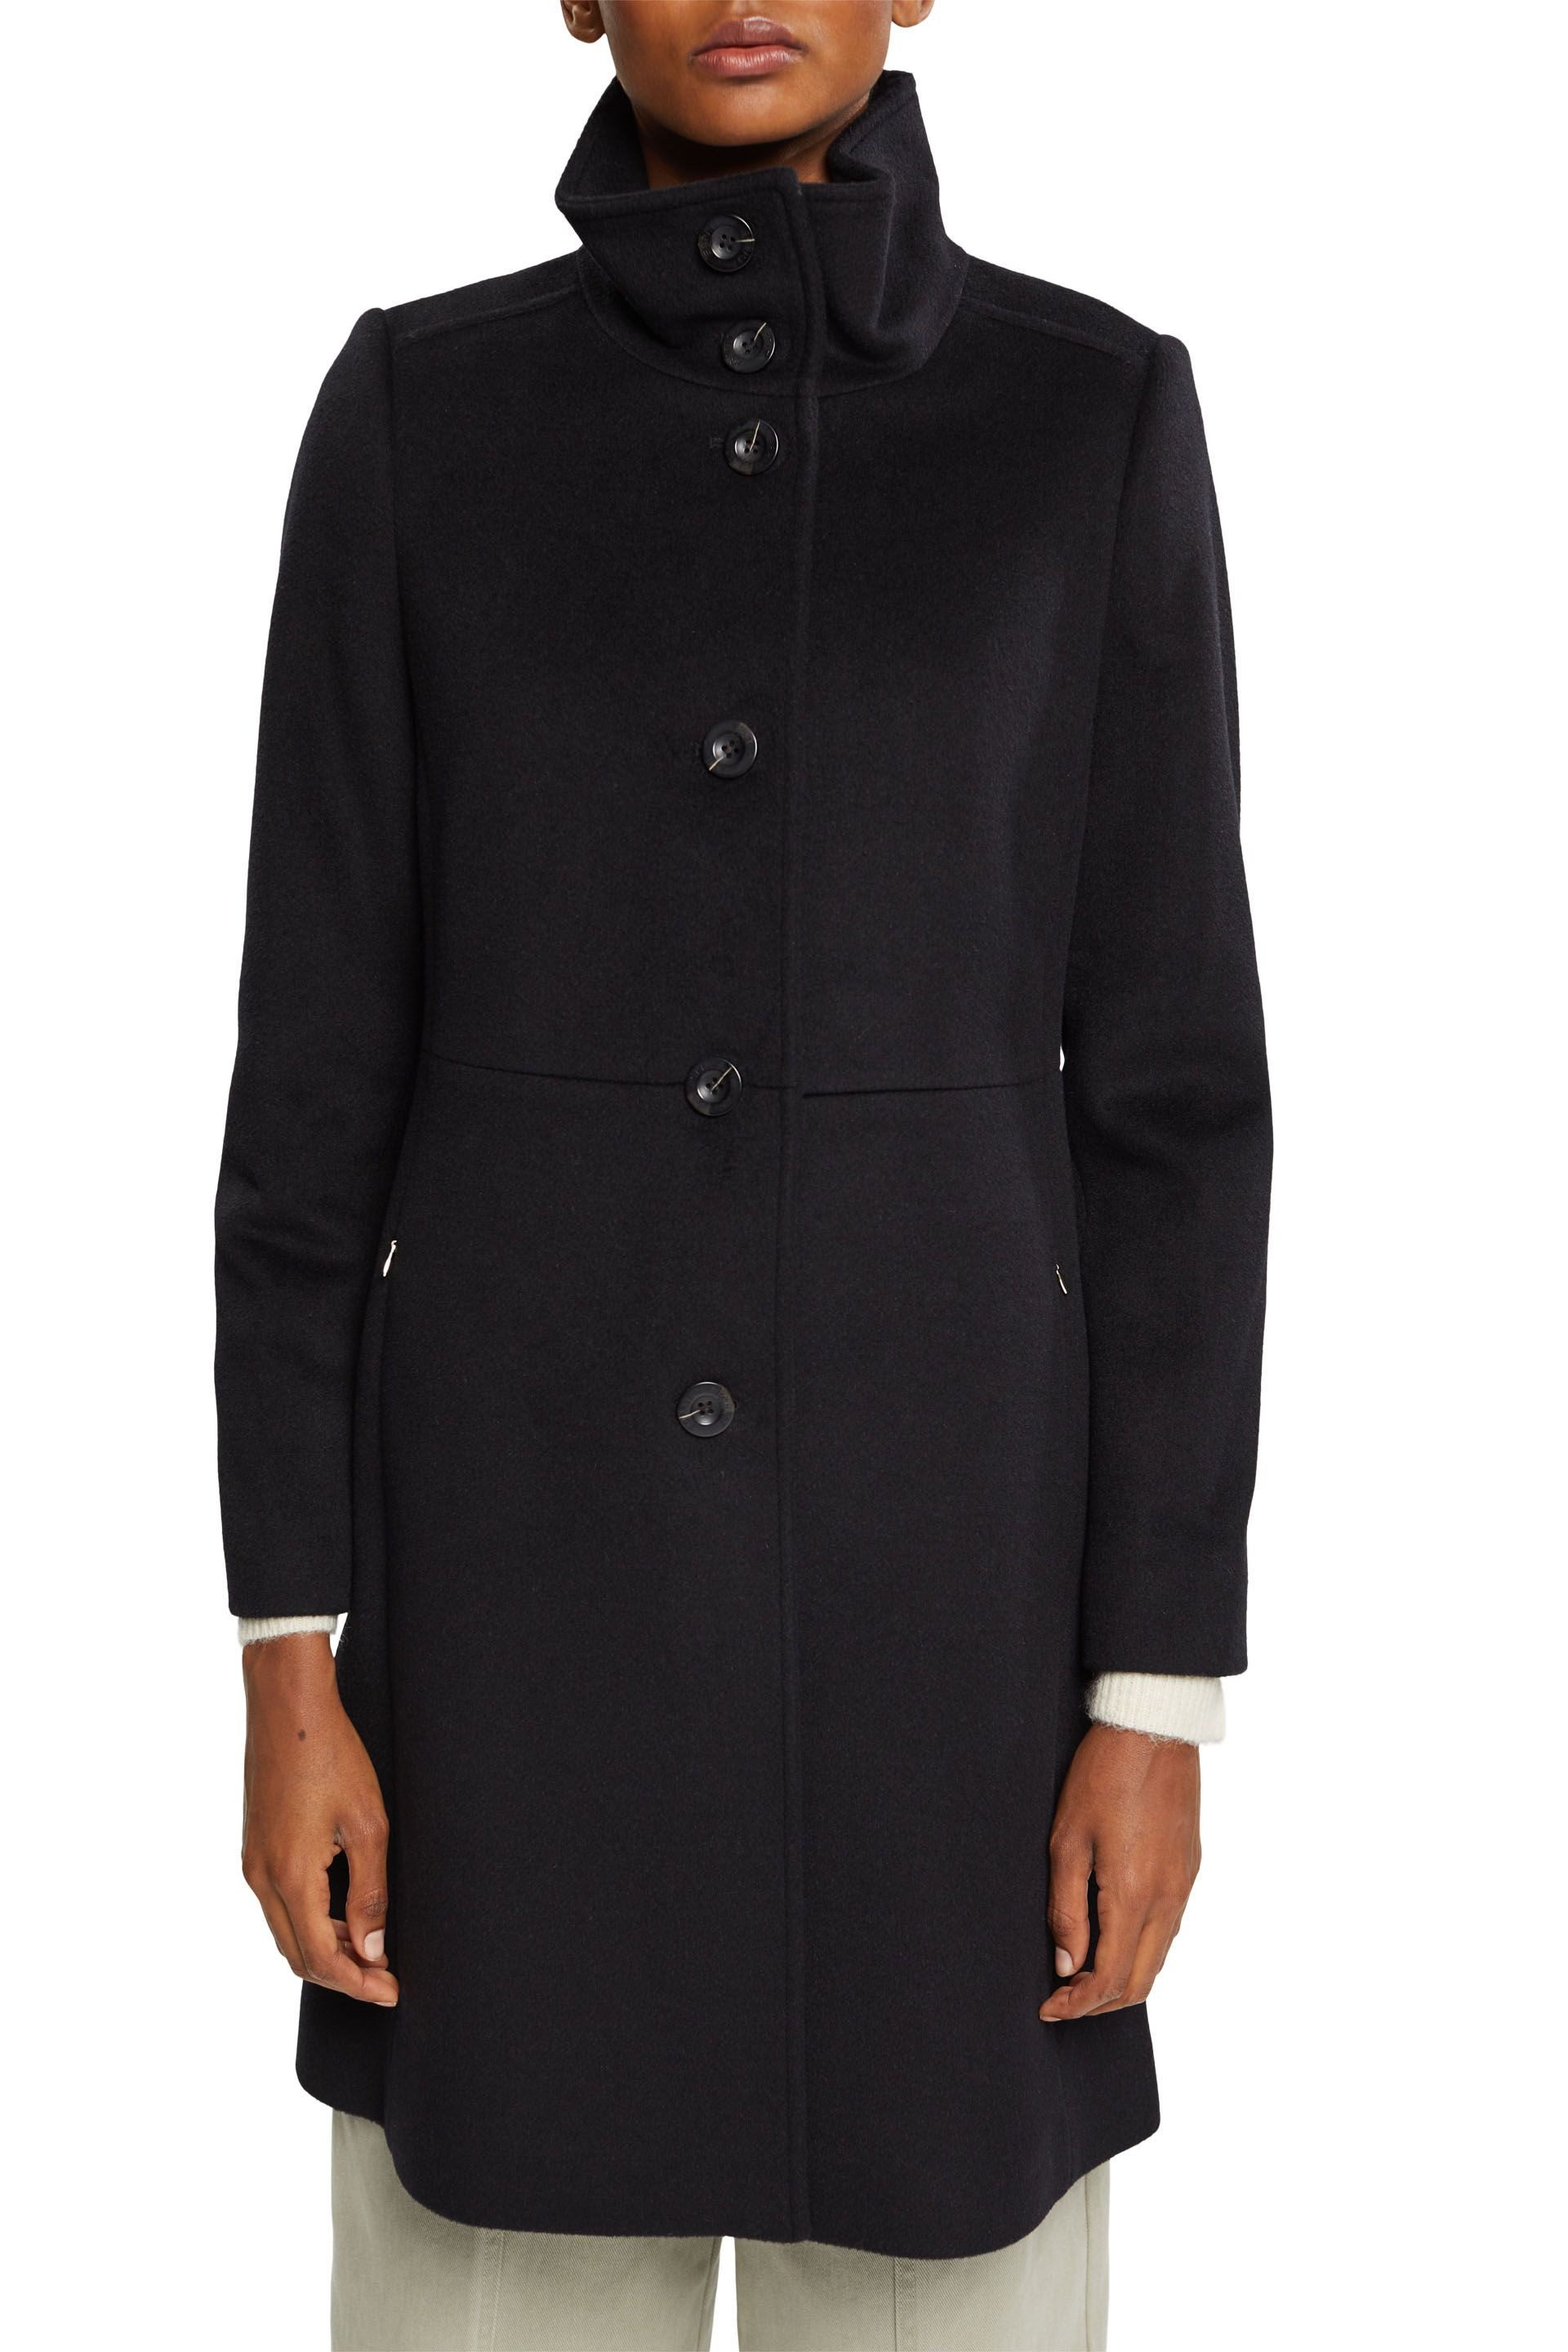 Coat in wool blend, Black, large image number 1